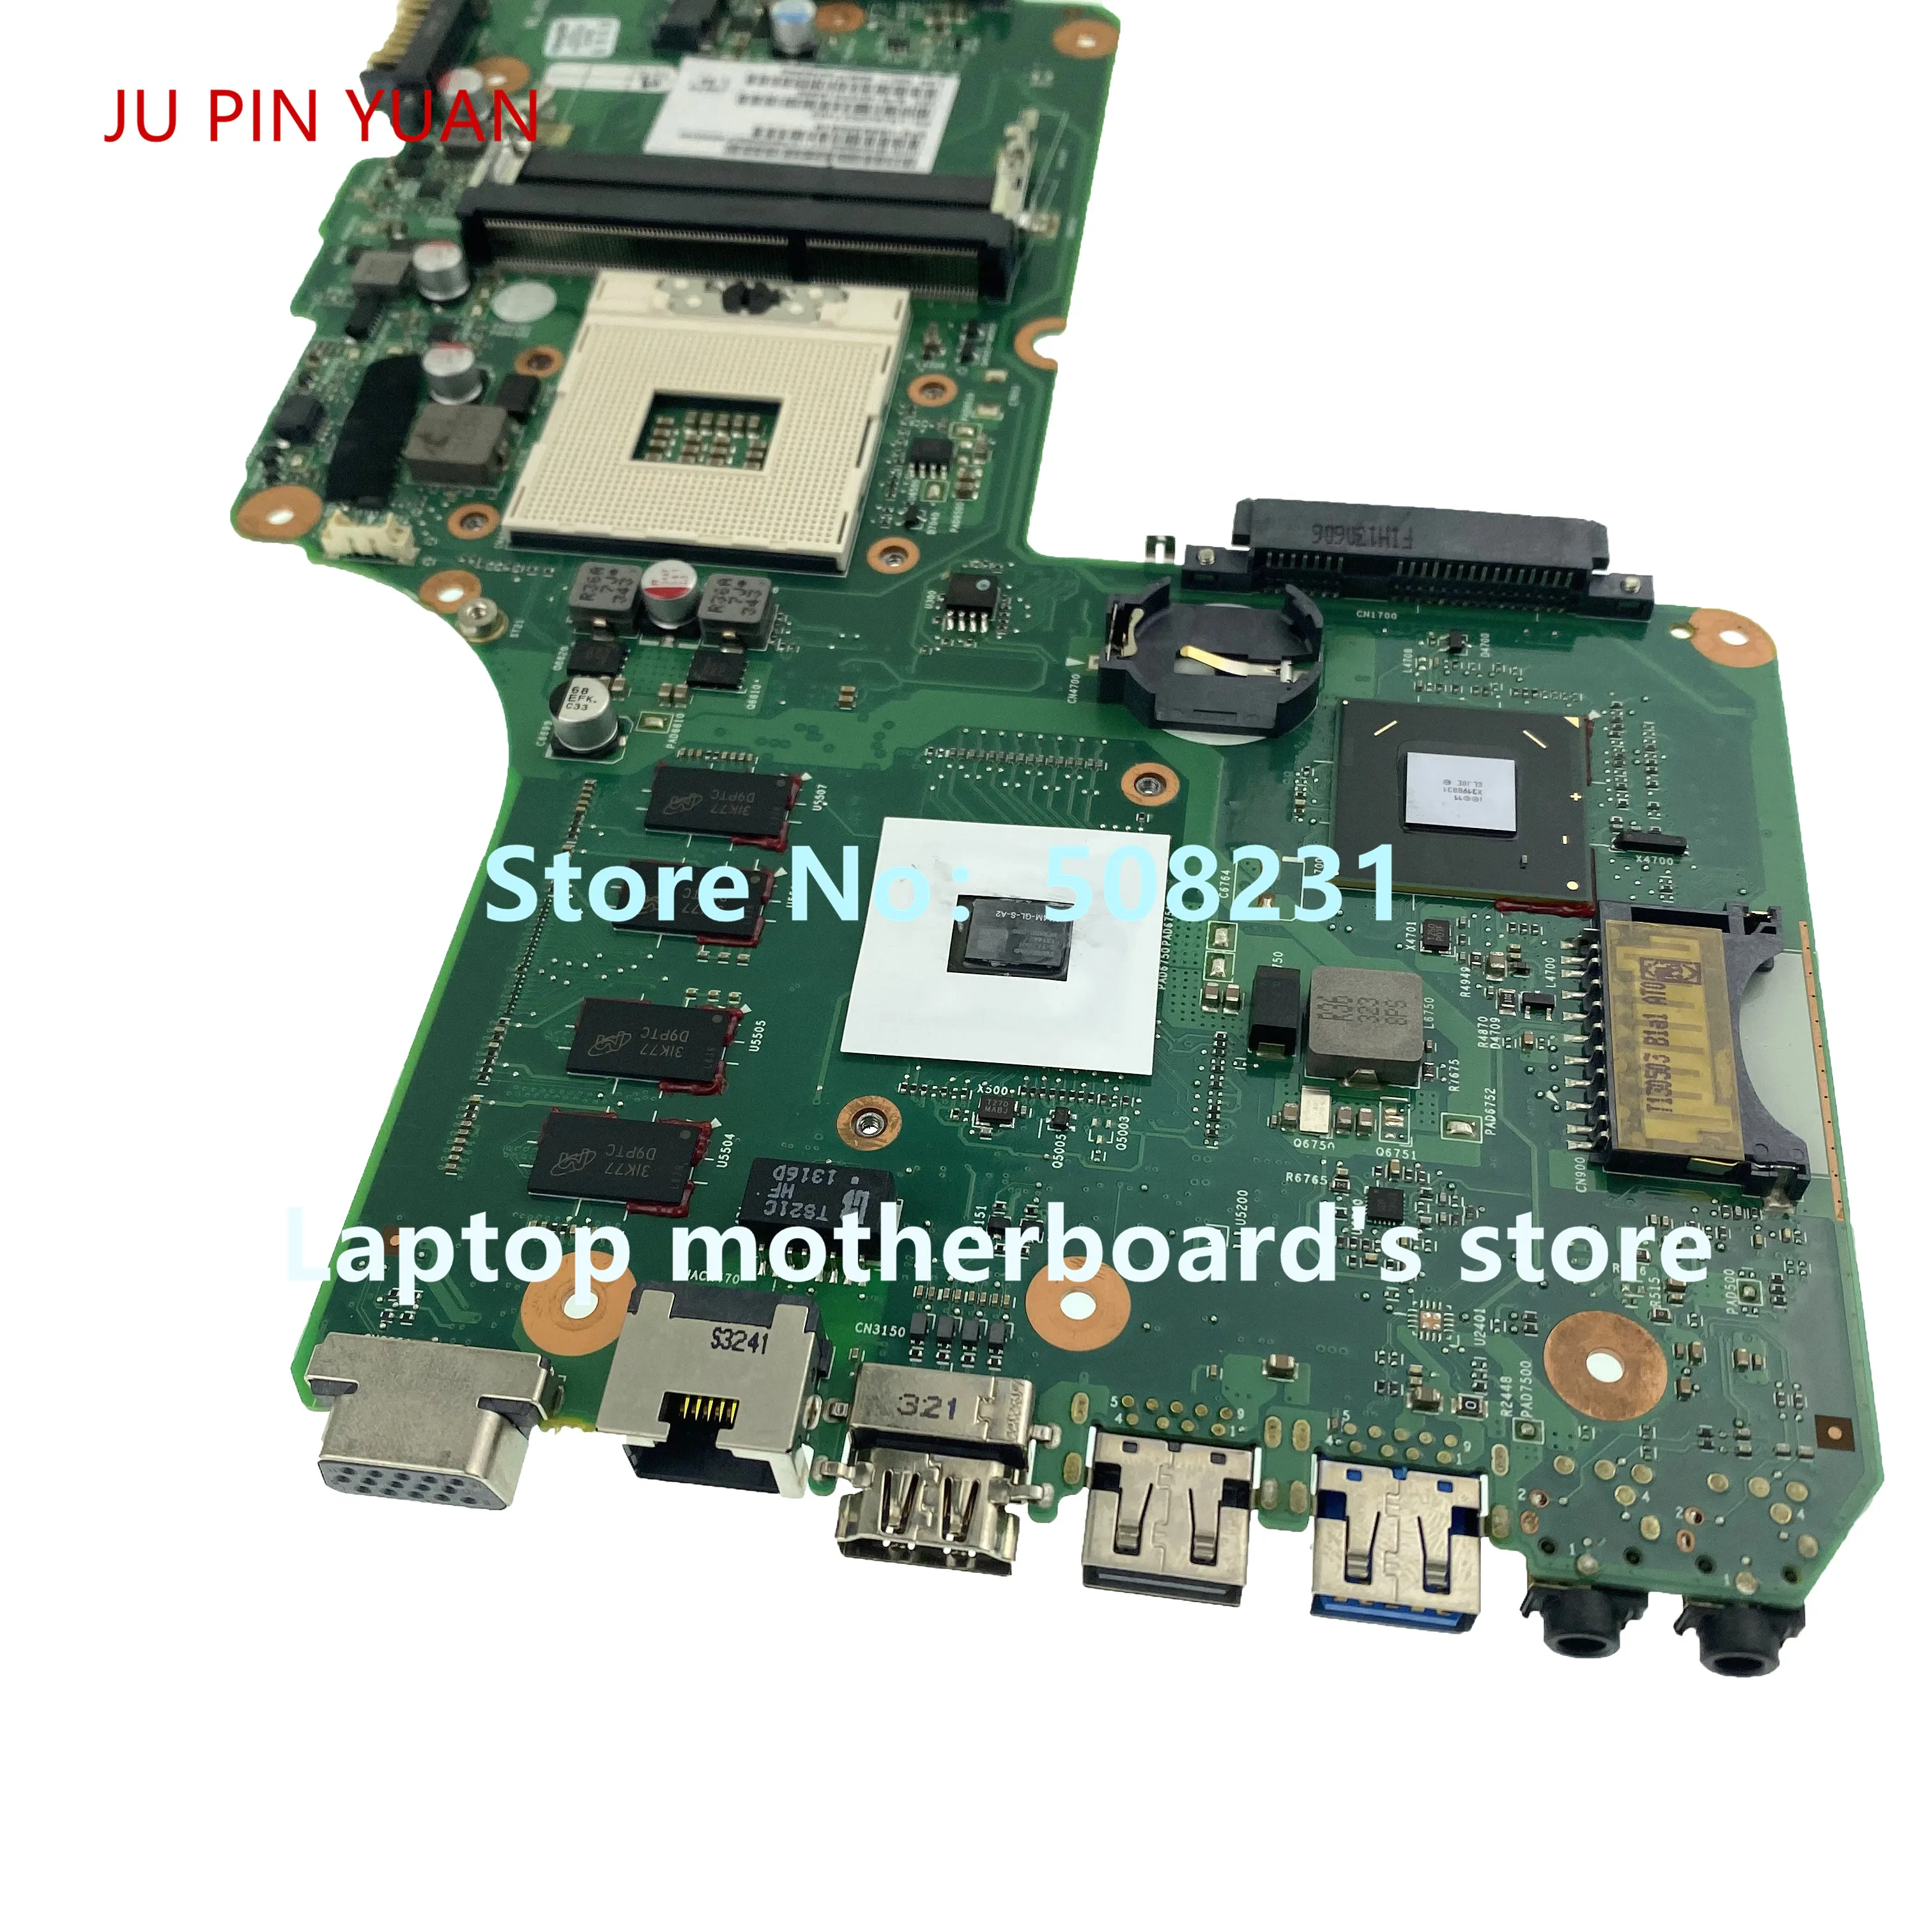 Ju pin yuan     Toshiba Satellite C50 C55   V000325010 6050A2557401-MB-A02